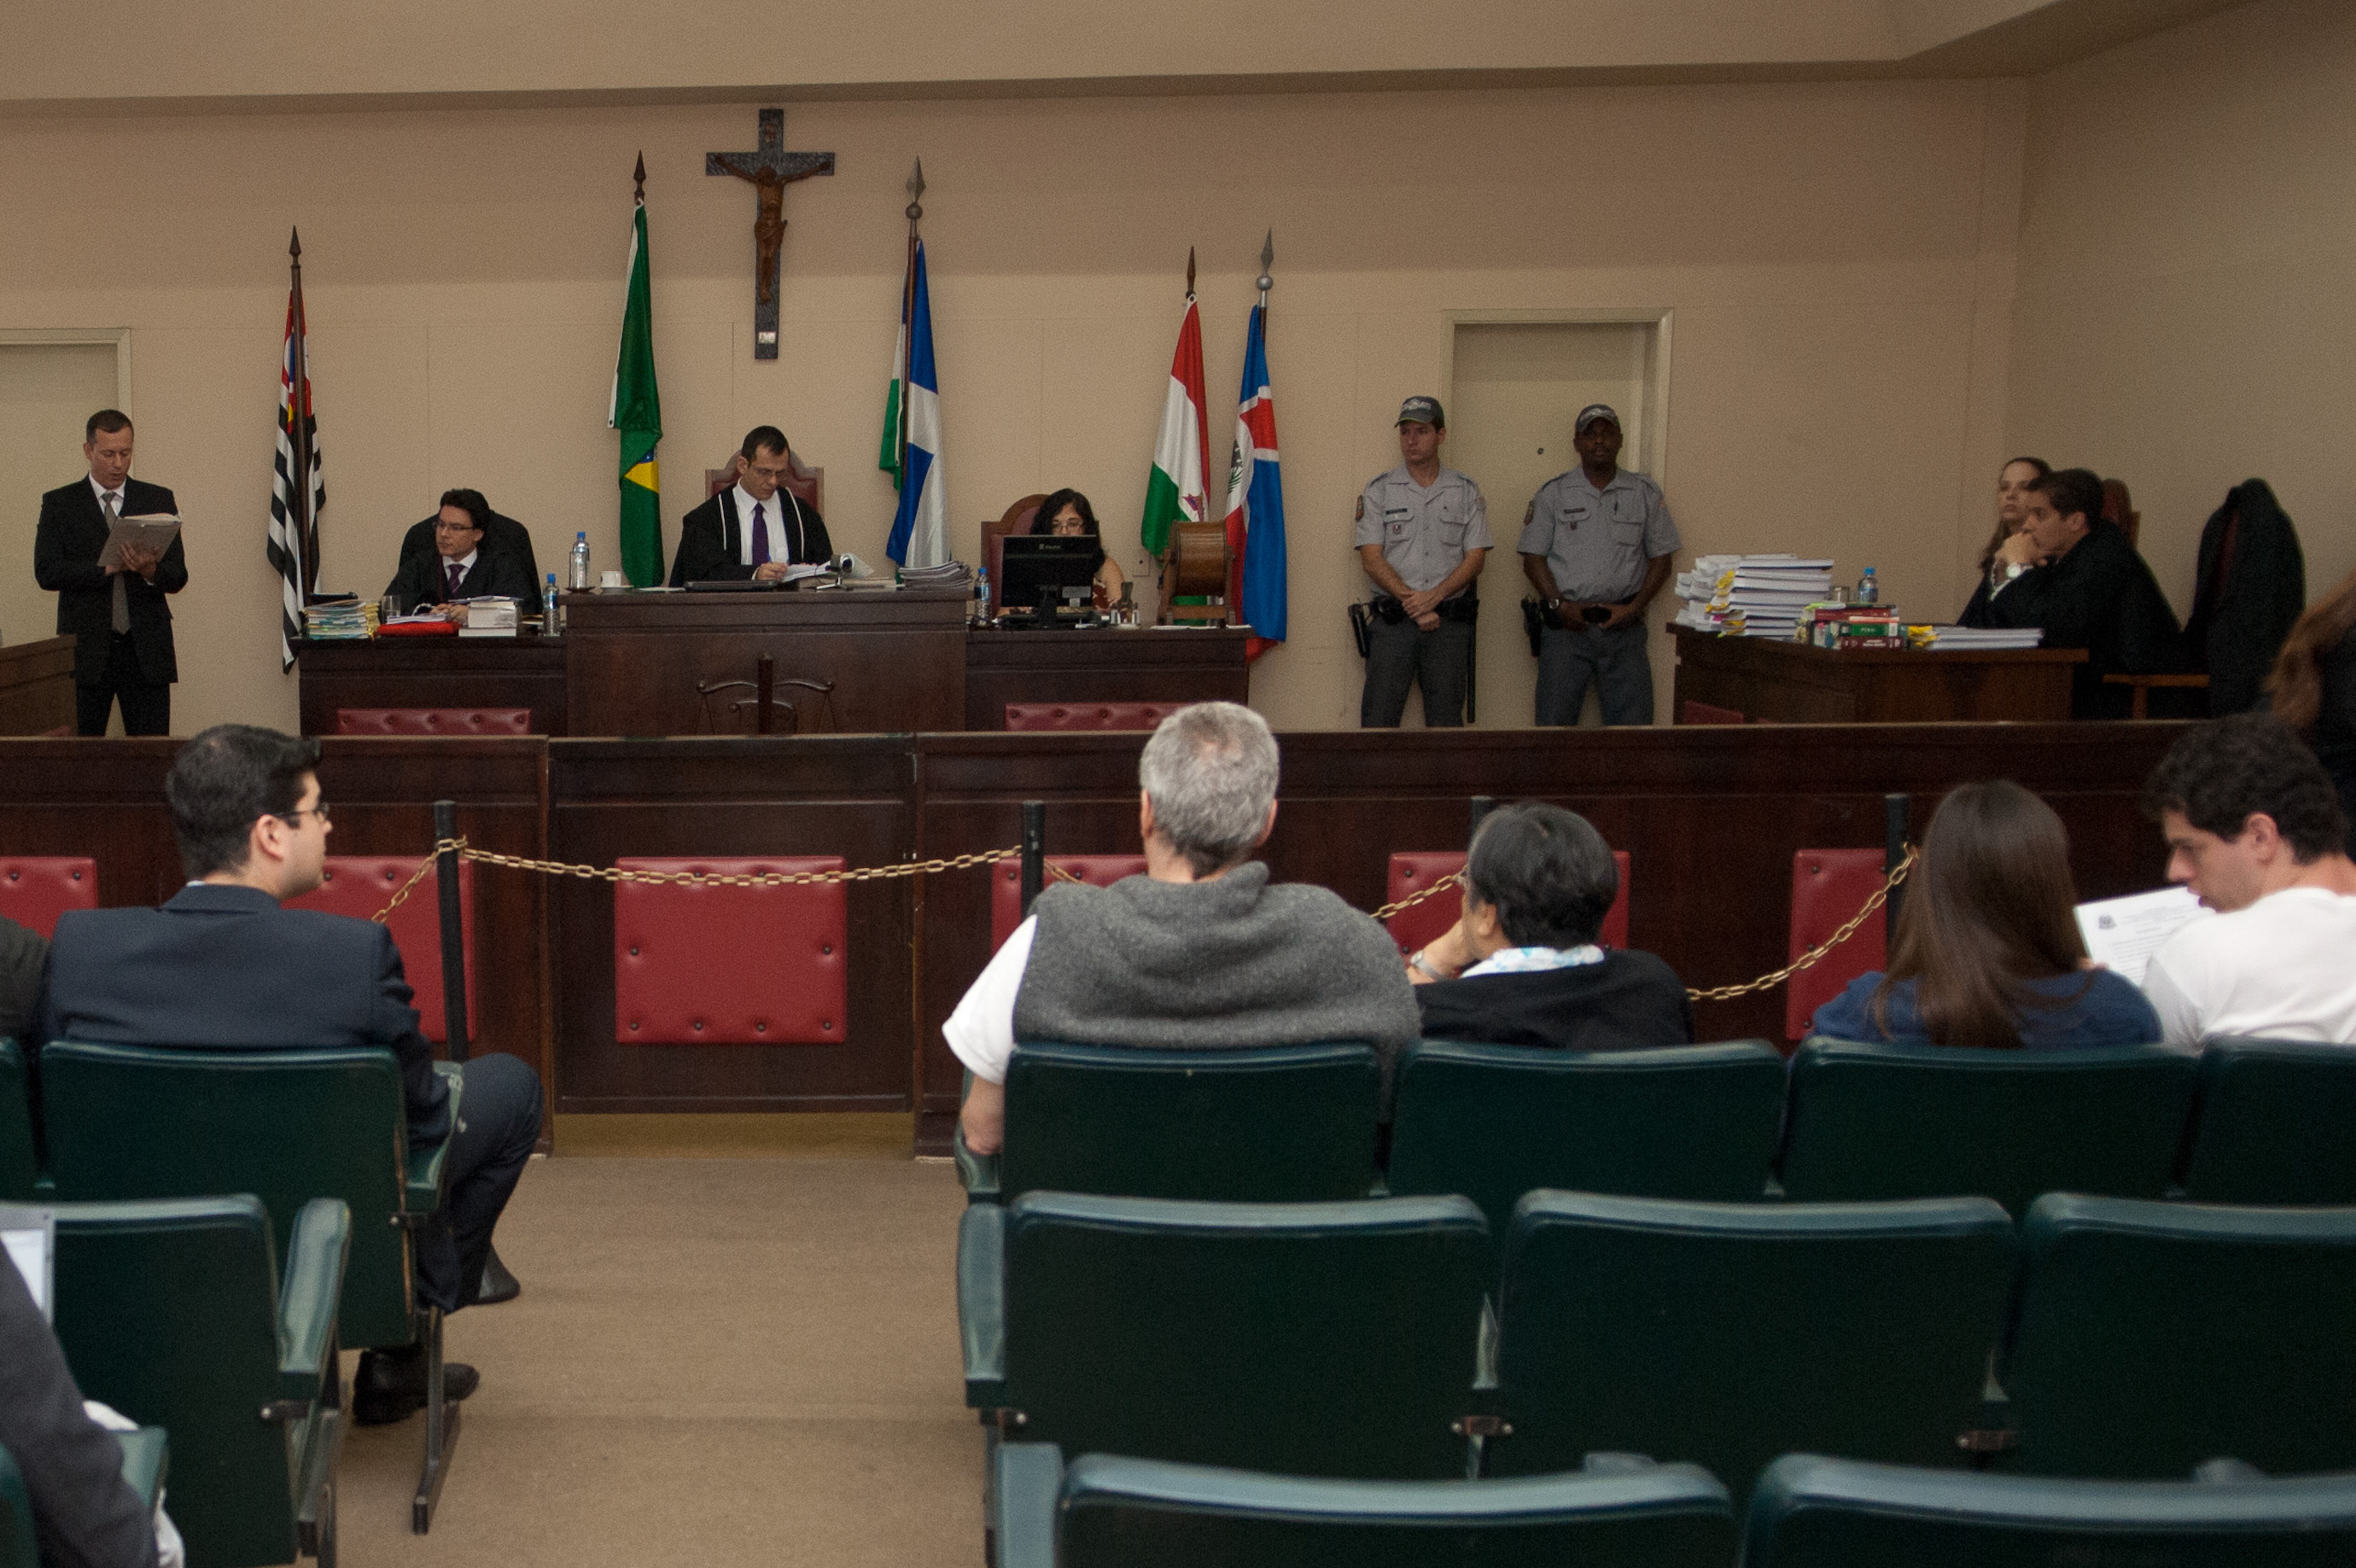 EBC | Pessoa com deficiência visual participa do Tribunal de Júri em Niterói2760 x 1837